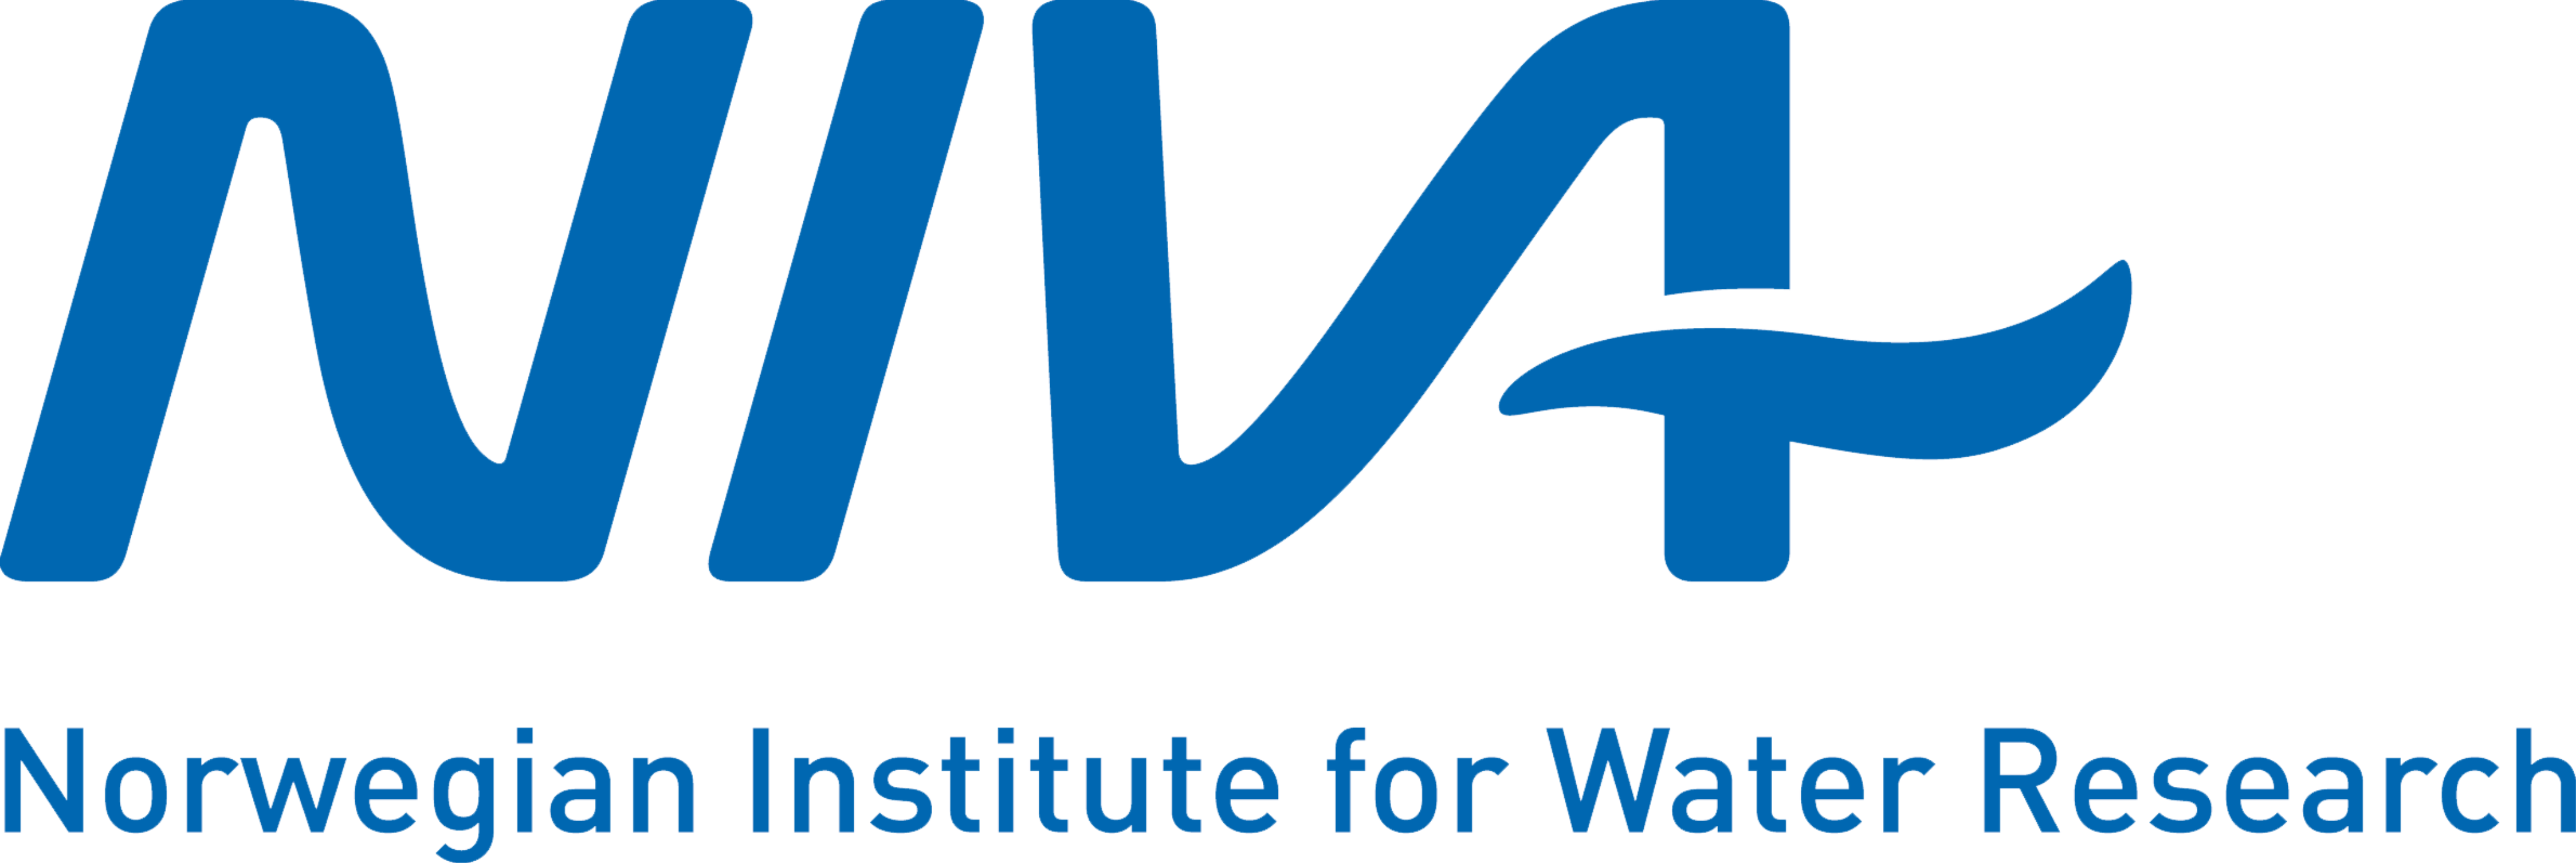 NIVA logo